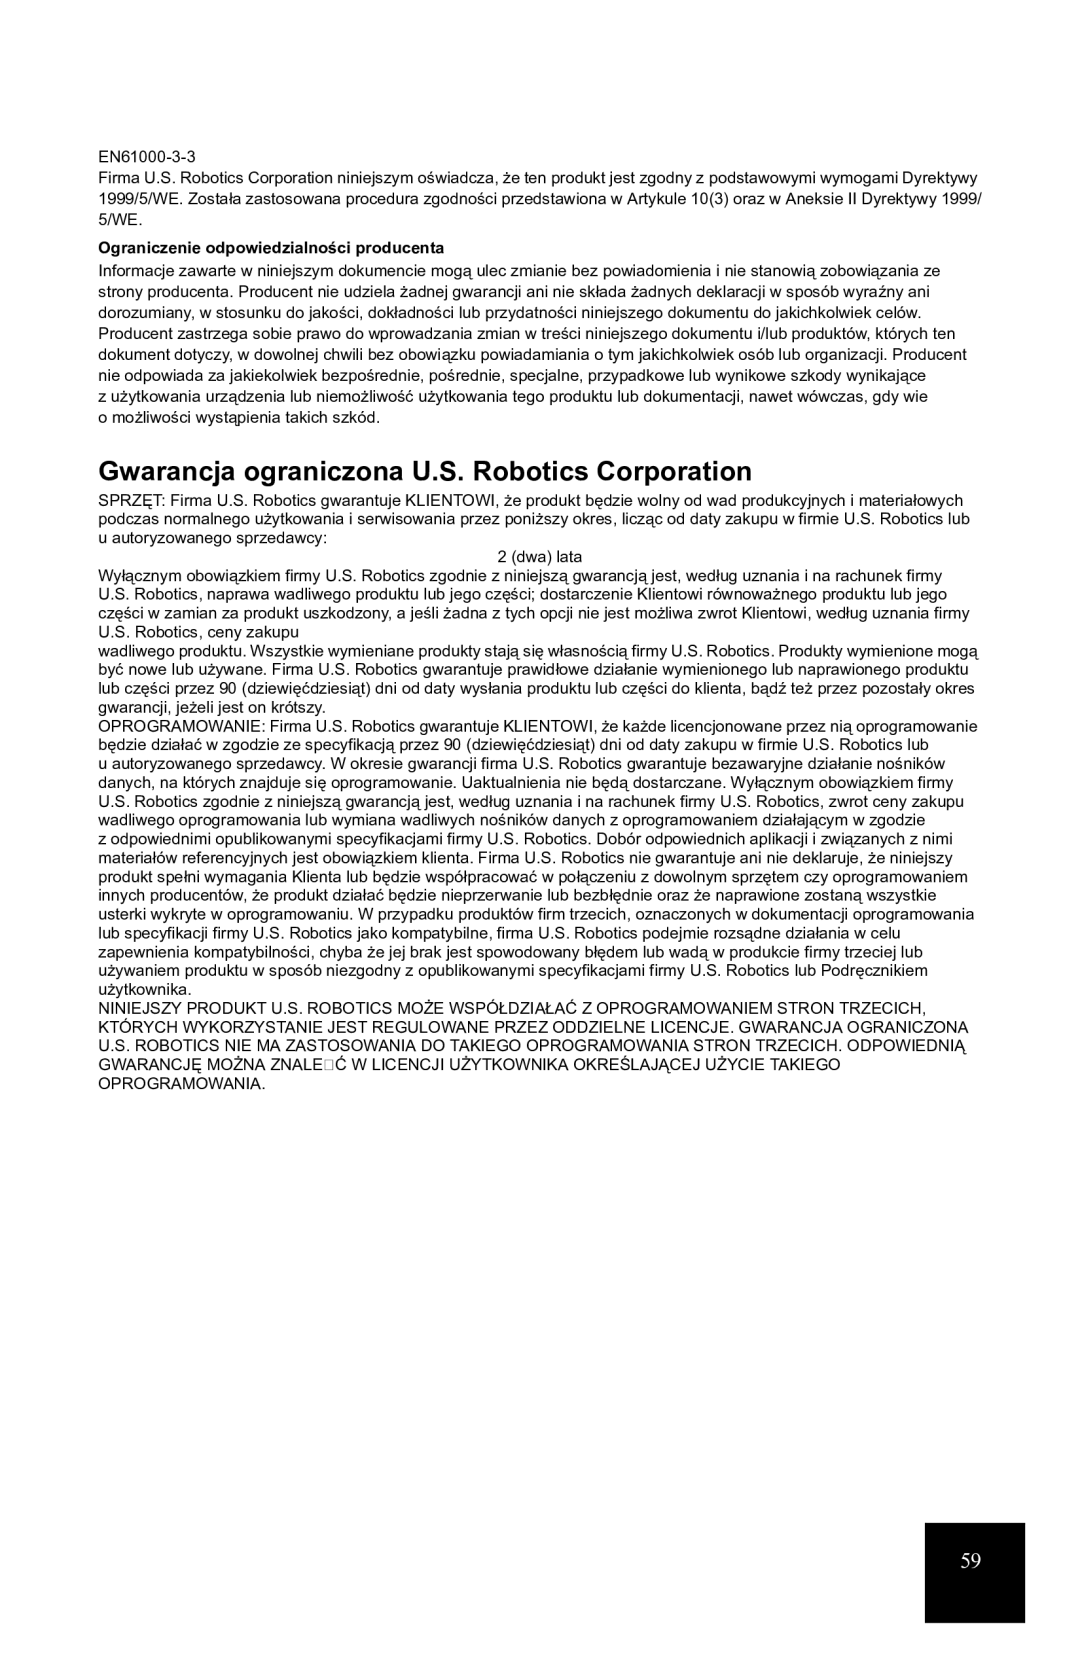 USRobotics 7931 manual Gwarancja ograniczona U.S. Robotics Corporation, Ograniczenie odpowiedzialności producenta 